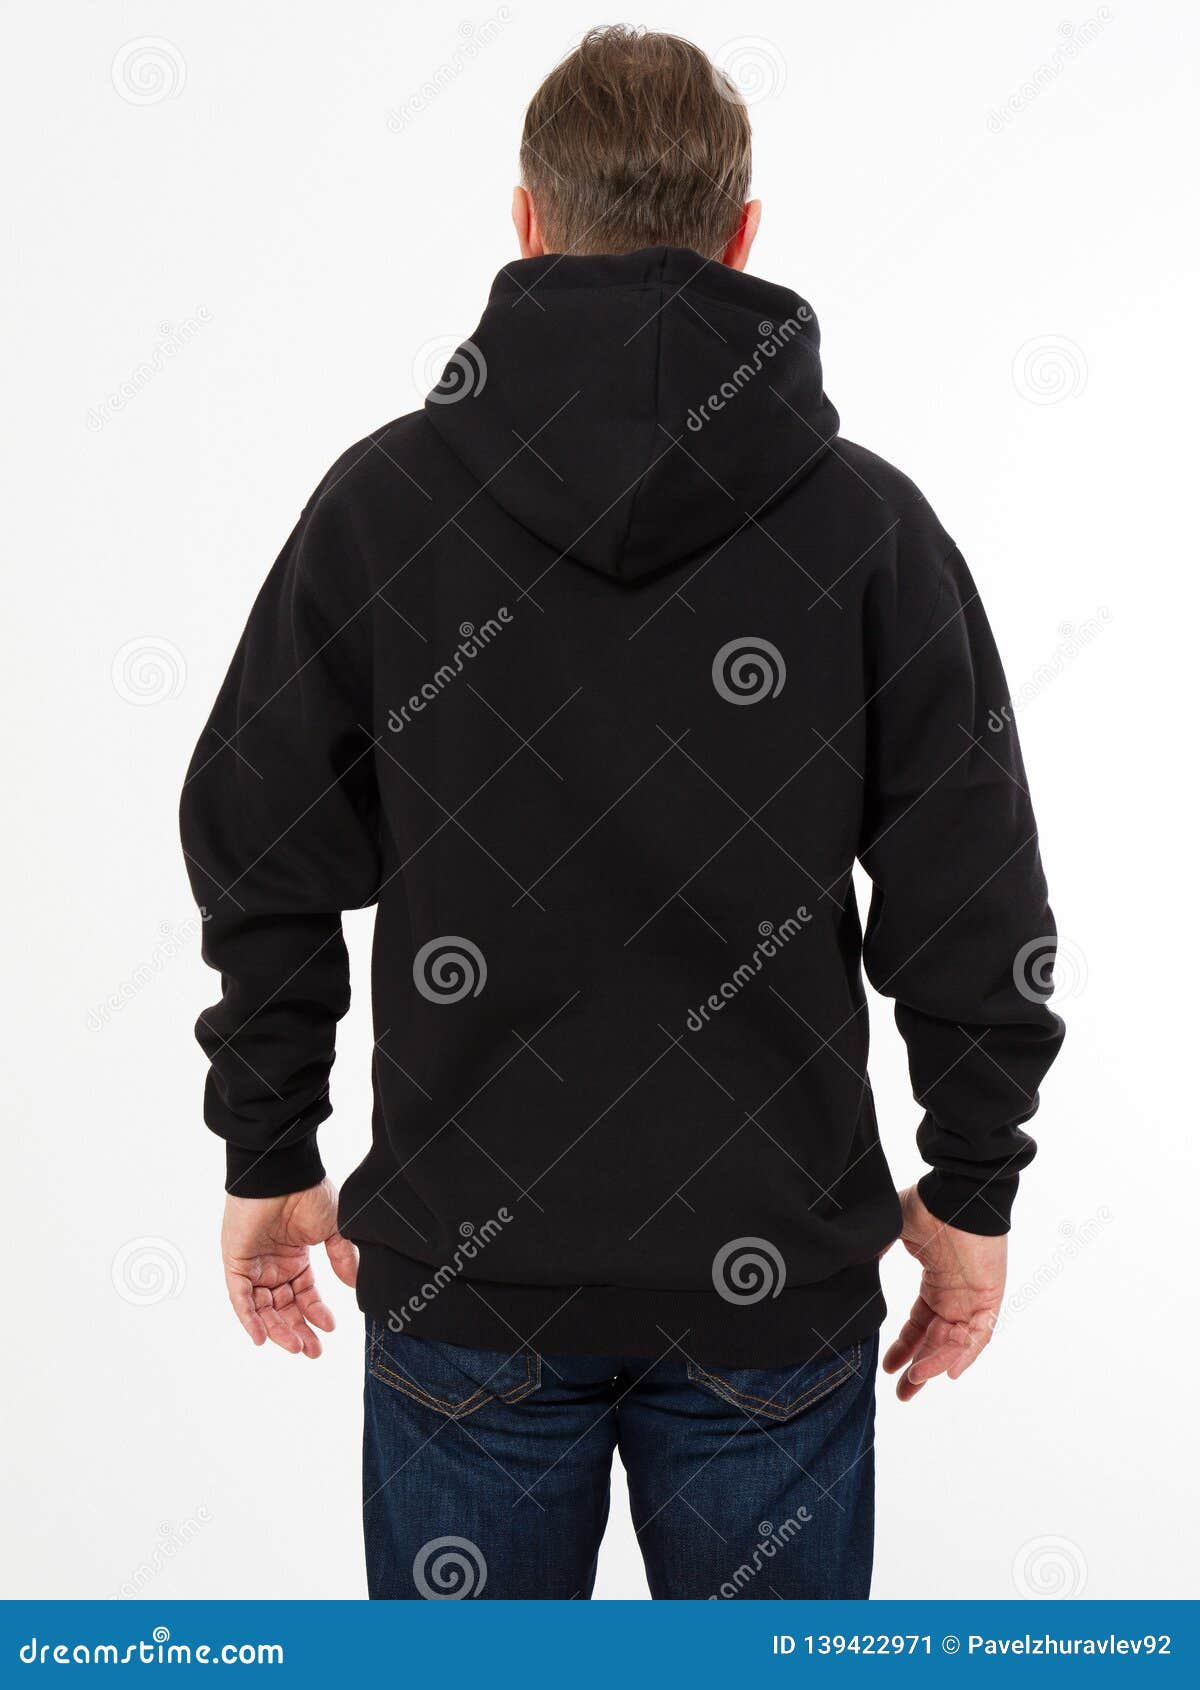 Back View - Man In Black Sweatshirt, Black Hoodies , Mock ...